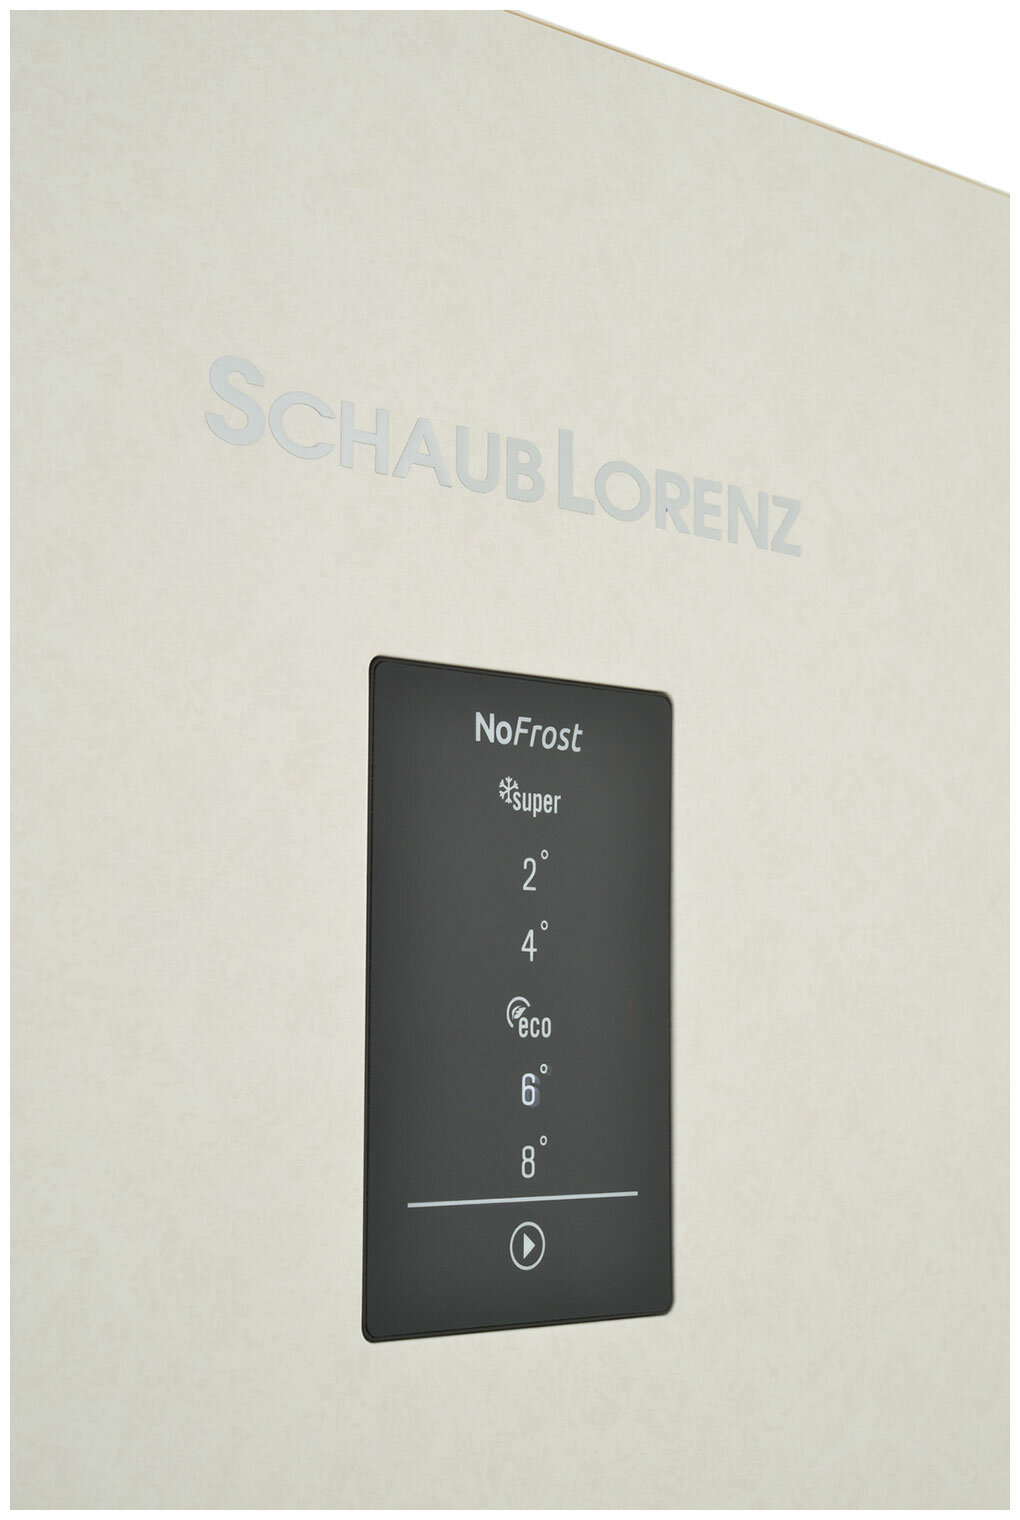 Холодильник Schaub Lorenz - фото №5